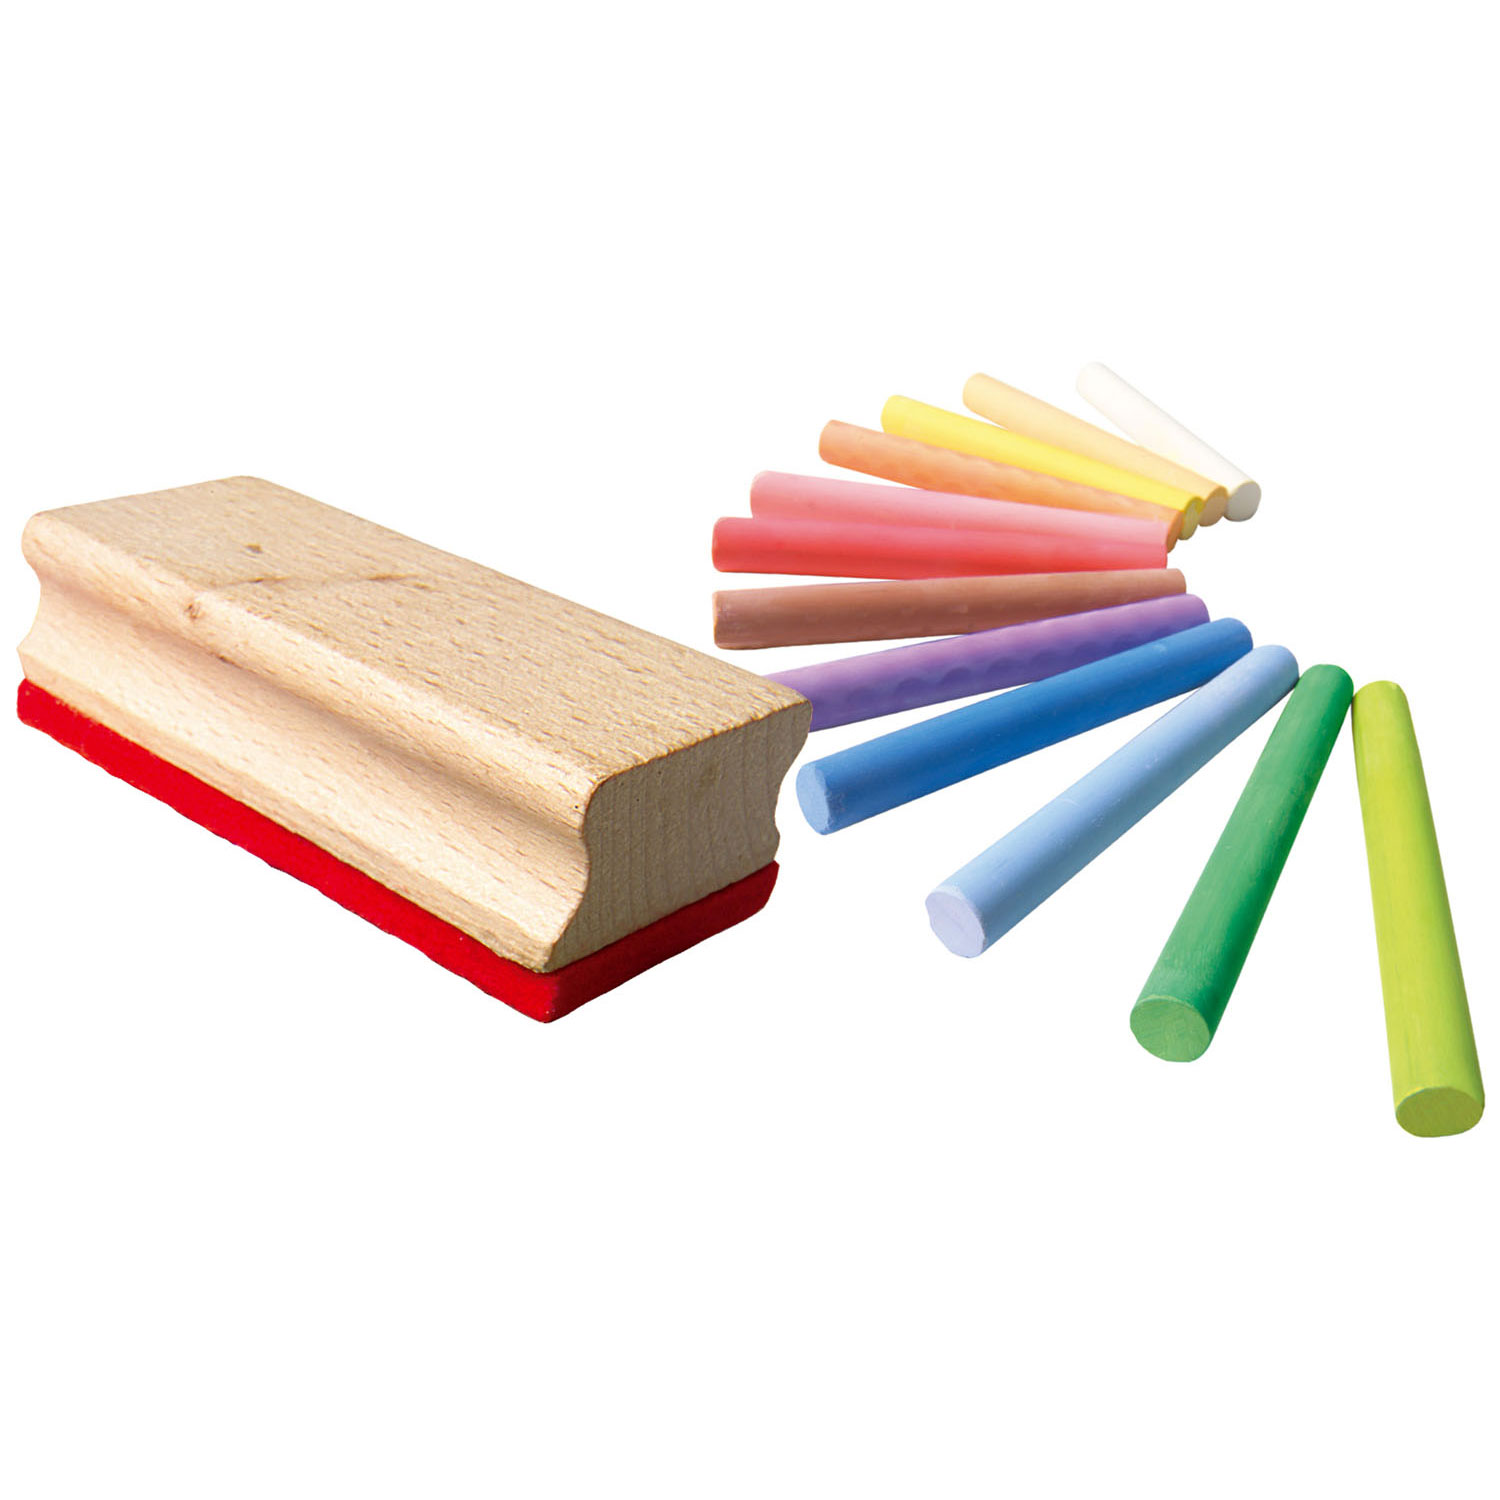 Crayons de couleur SES avec gomme